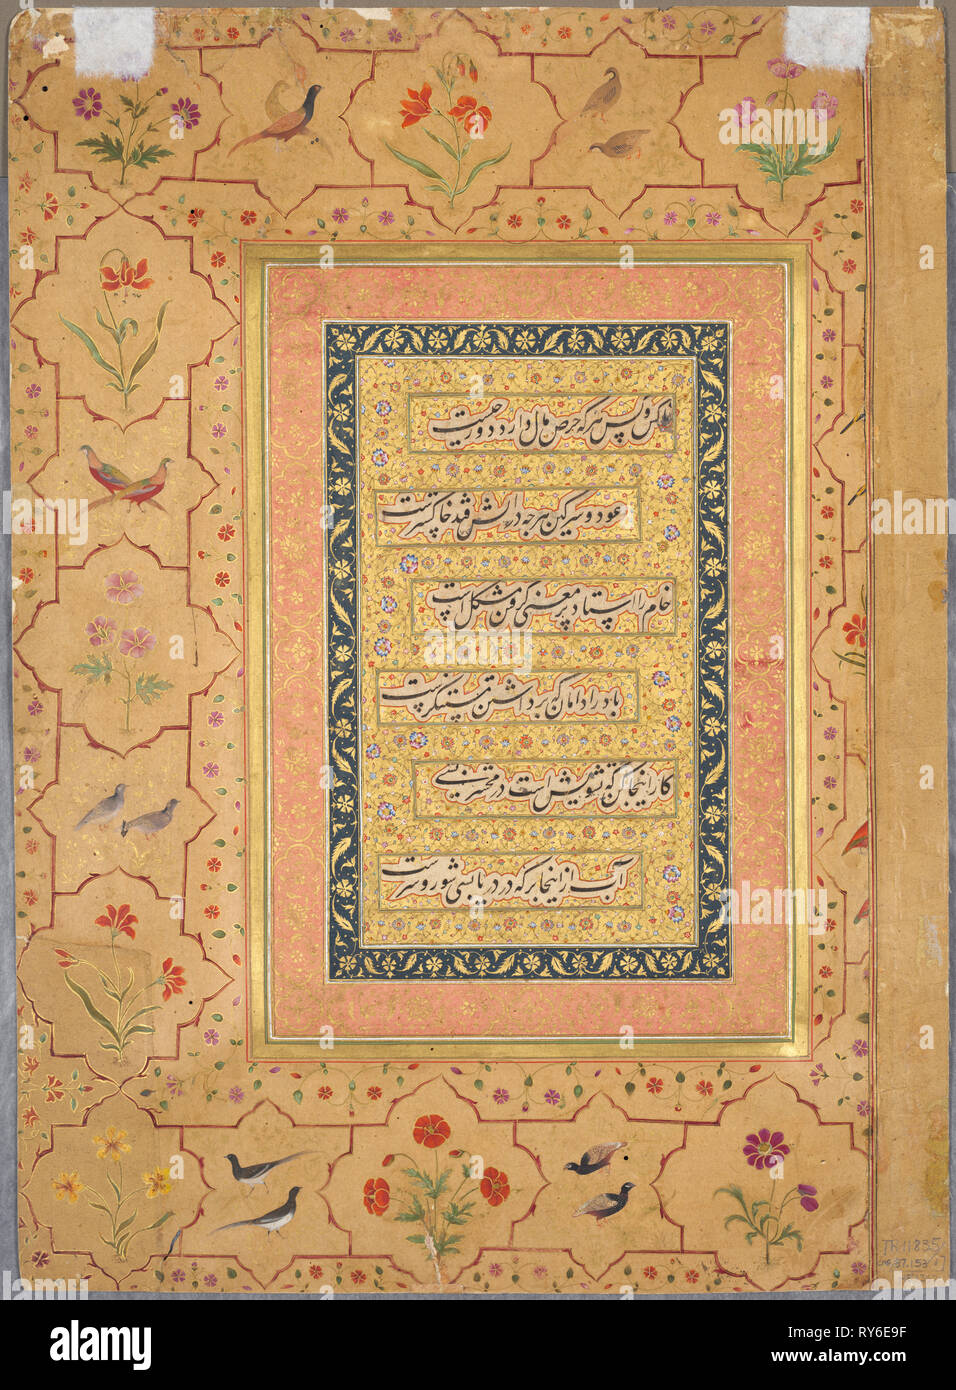 Seite aus dem späten Shah Jahan Album: Kalligraphie von zierpflanze Grenze mit Mohn und Paare von Vögeln, c. gerahmt 1653. Indien, Mughal, Herrschaft von Shah Jahan (1628-1658), Mughal Dynasty (1526-1756), aus dem 17. Jahrhundert. Undurchsichtig, Gold, Aquarell und Tusche auf Papier; gesamt: 37,8 x 27,3 cm (14 7/8 x 10 3/4 in Stockfoto